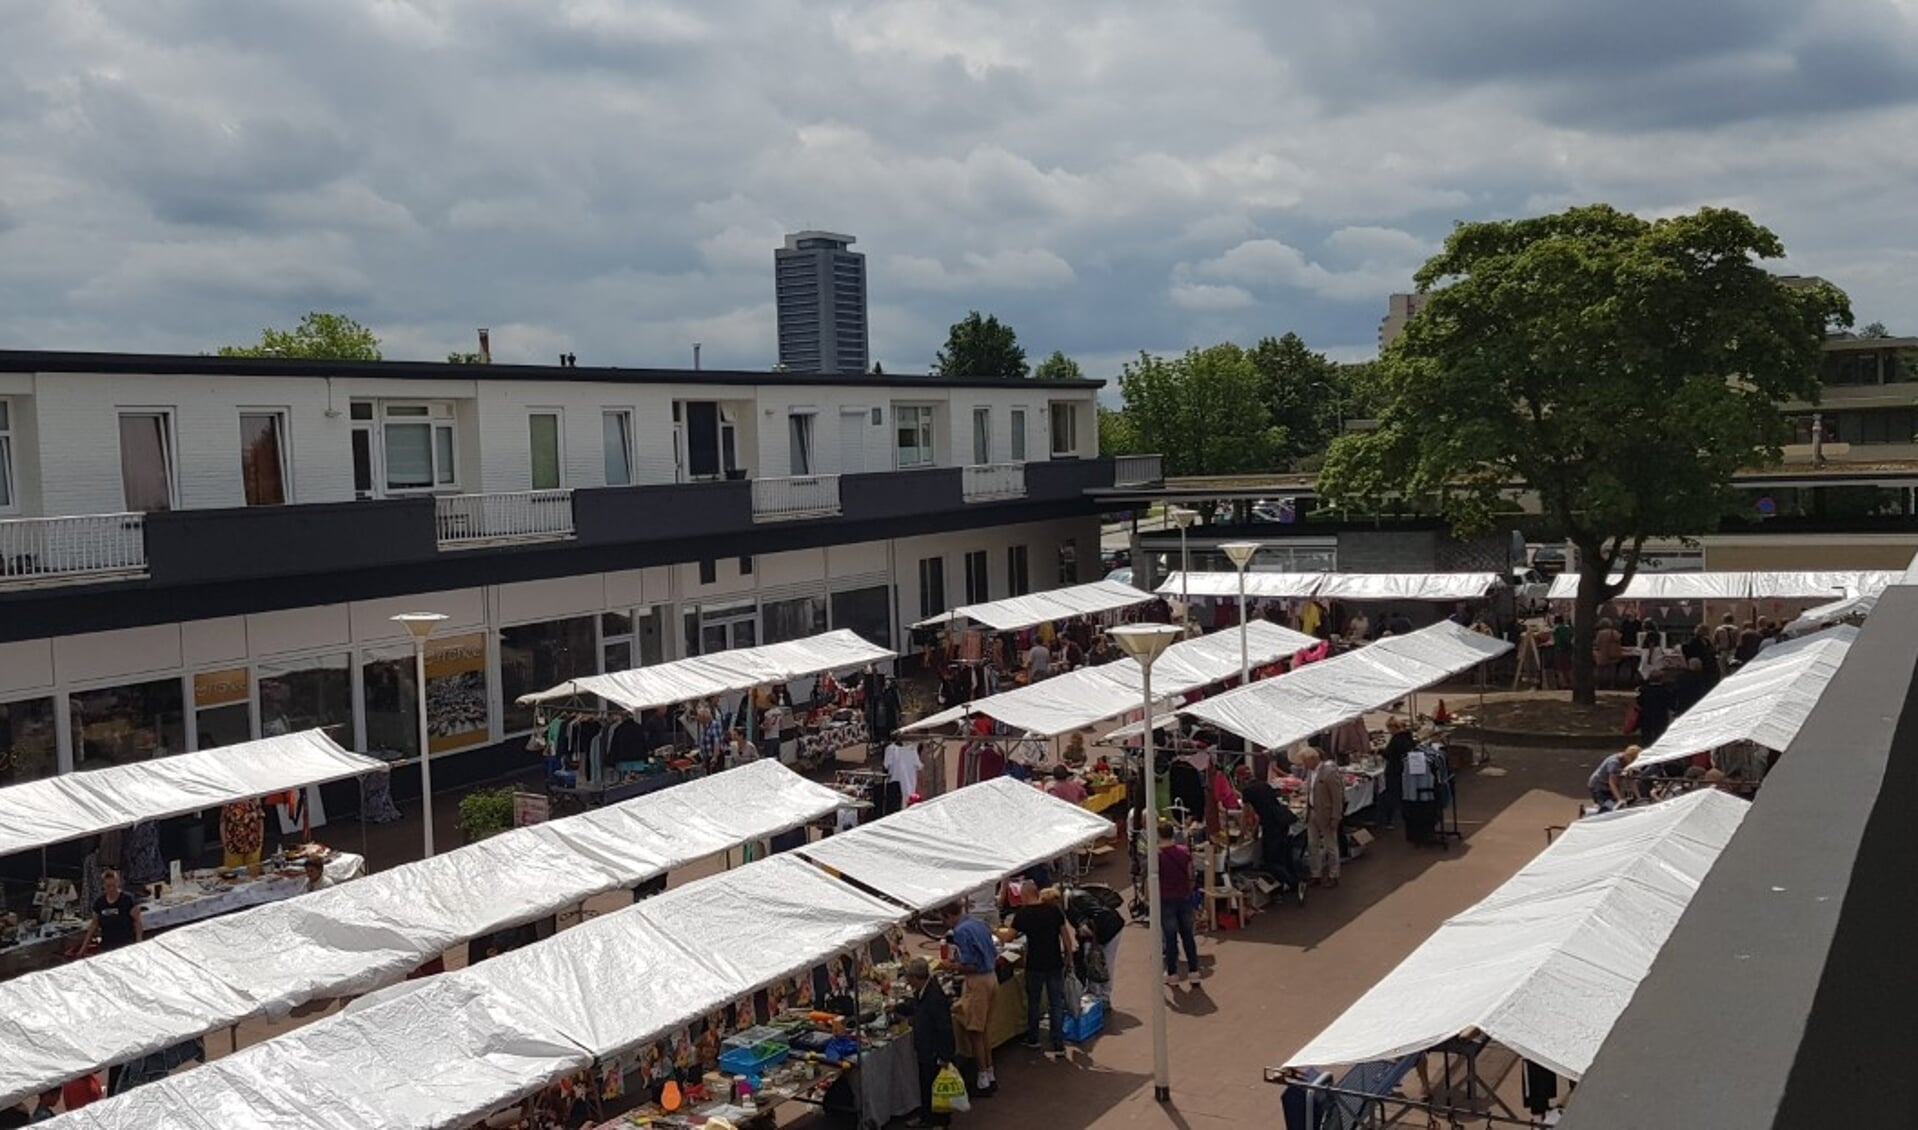 Aanstaande zondag is er een nieuwe editie van de creatieve rommelmarkt ‘Zuid Rommelt’ in de Zuiderpassage in Den Bosch.